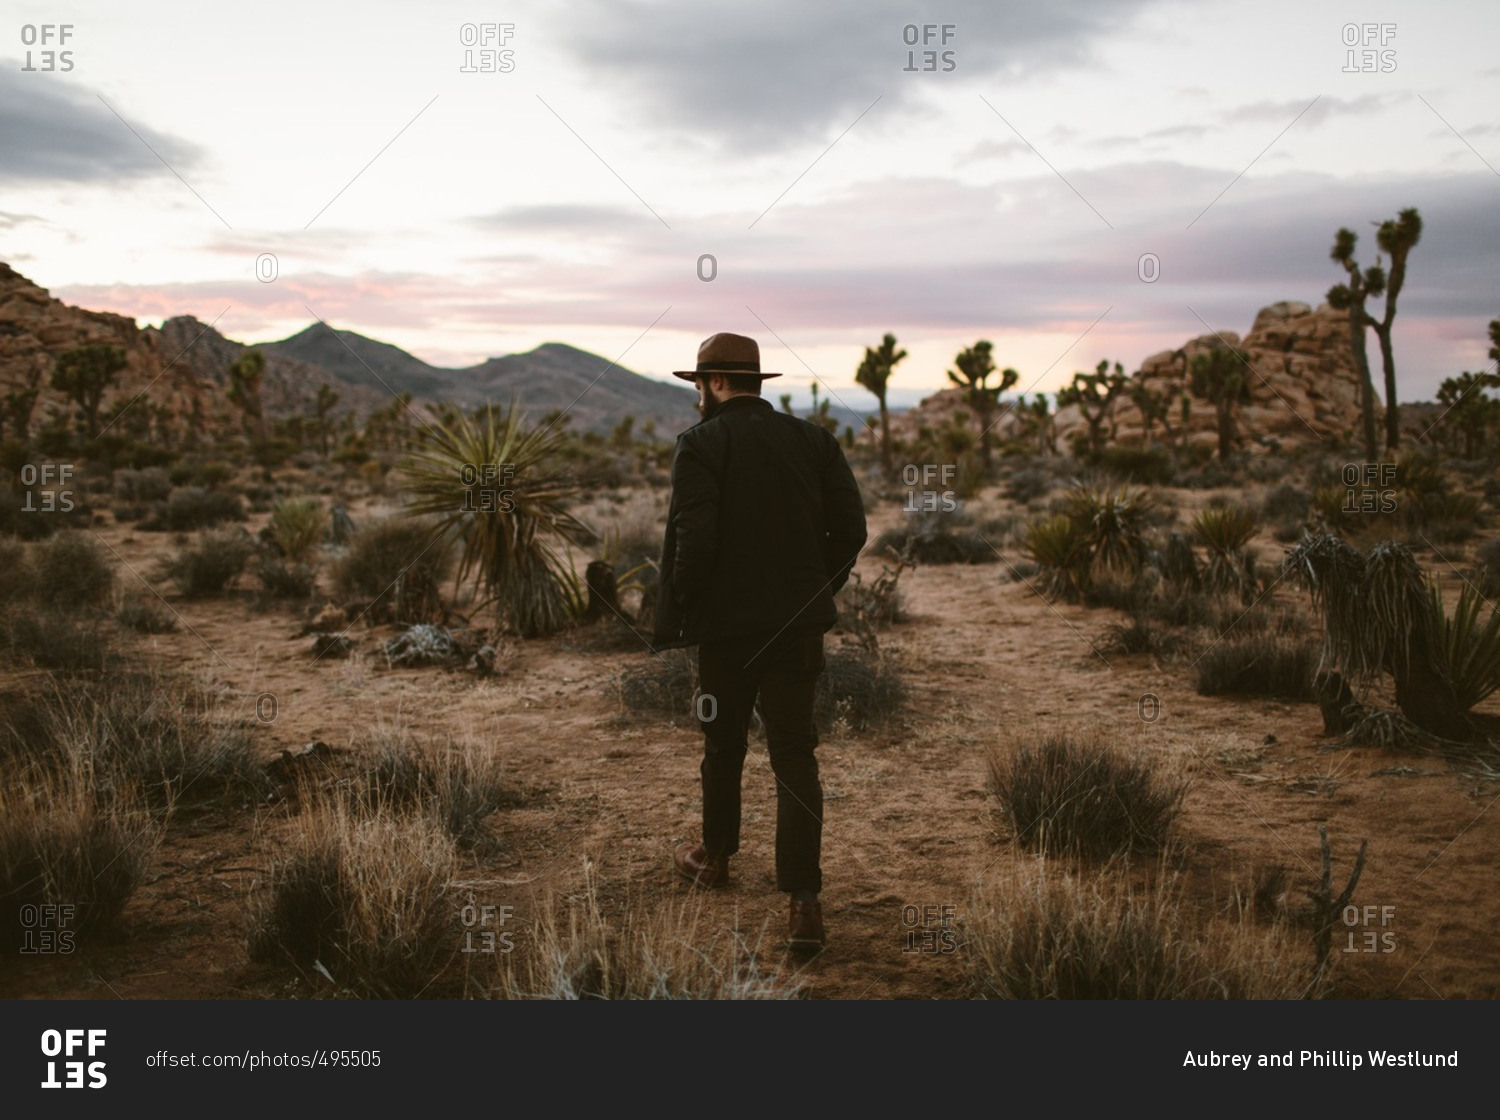 Man walking through vegetation and cacti in a desert